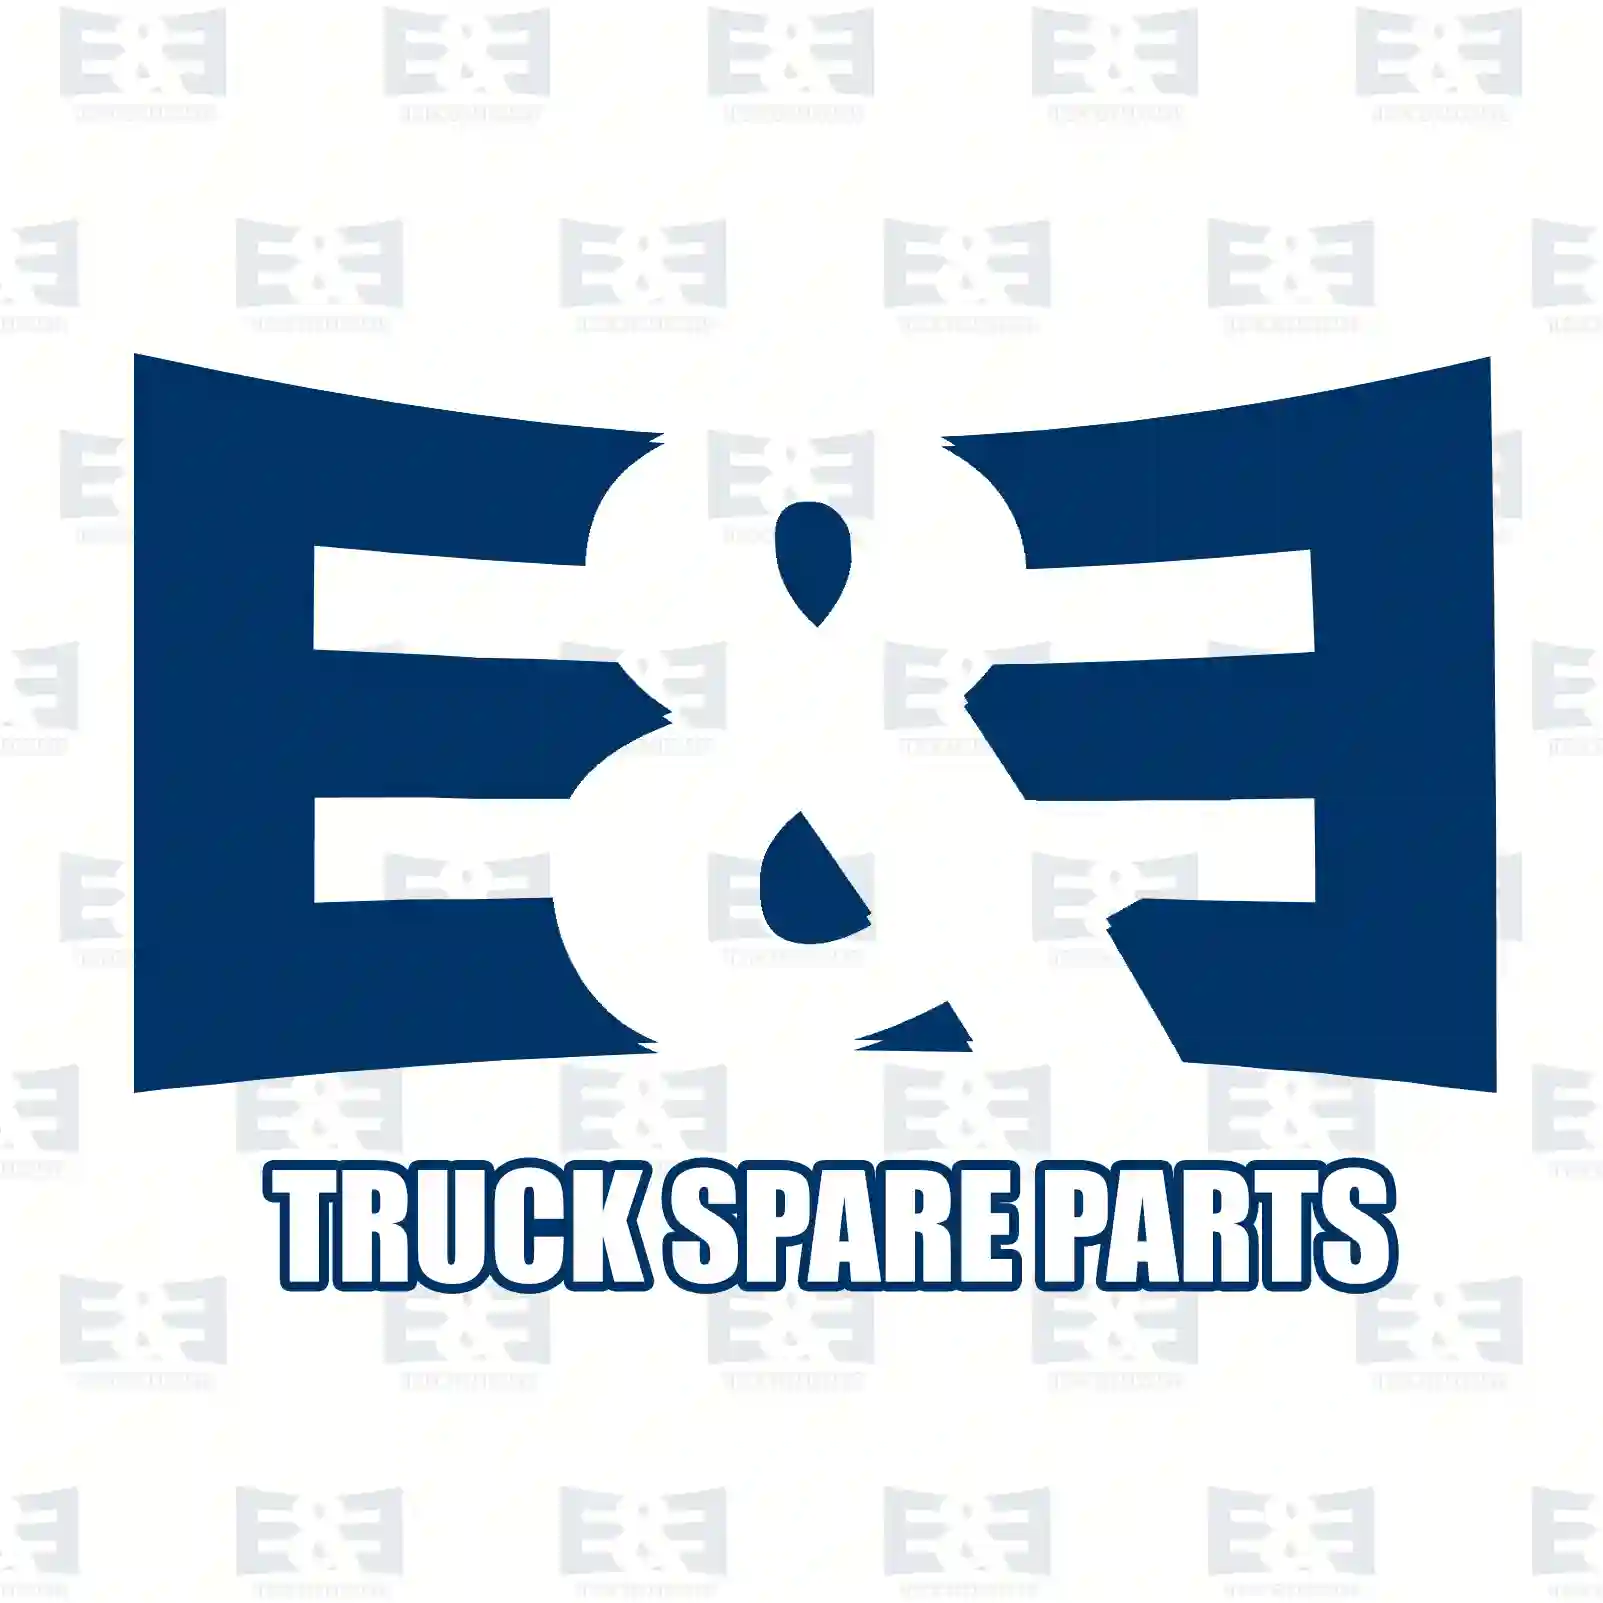 Brake caliper, 2E2297259, 93167652, 95519997, 95520001, 95520451, 44011-00Q0C, 44011-00Q0E, 44011-00Q0J, 44011-00Q0L, 4420056, 4502801, 440111516R, 440114638R, 440115485R, 440118711R ||  2E2297259 E&E Truck Spare Parts | Truck Spare Parts, Auotomotive Spare Parts Brake caliper, 2E2297259, 93167652, 95519997, 95520001, 95520451, 44011-00Q0C, 44011-00Q0E, 44011-00Q0J, 44011-00Q0L, 4420056, 4502801, 440111516R, 440114638R, 440115485R, 440118711R ||  2E2297259 E&E Truck Spare Parts | Truck Spare Parts, Auotomotive Spare Parts